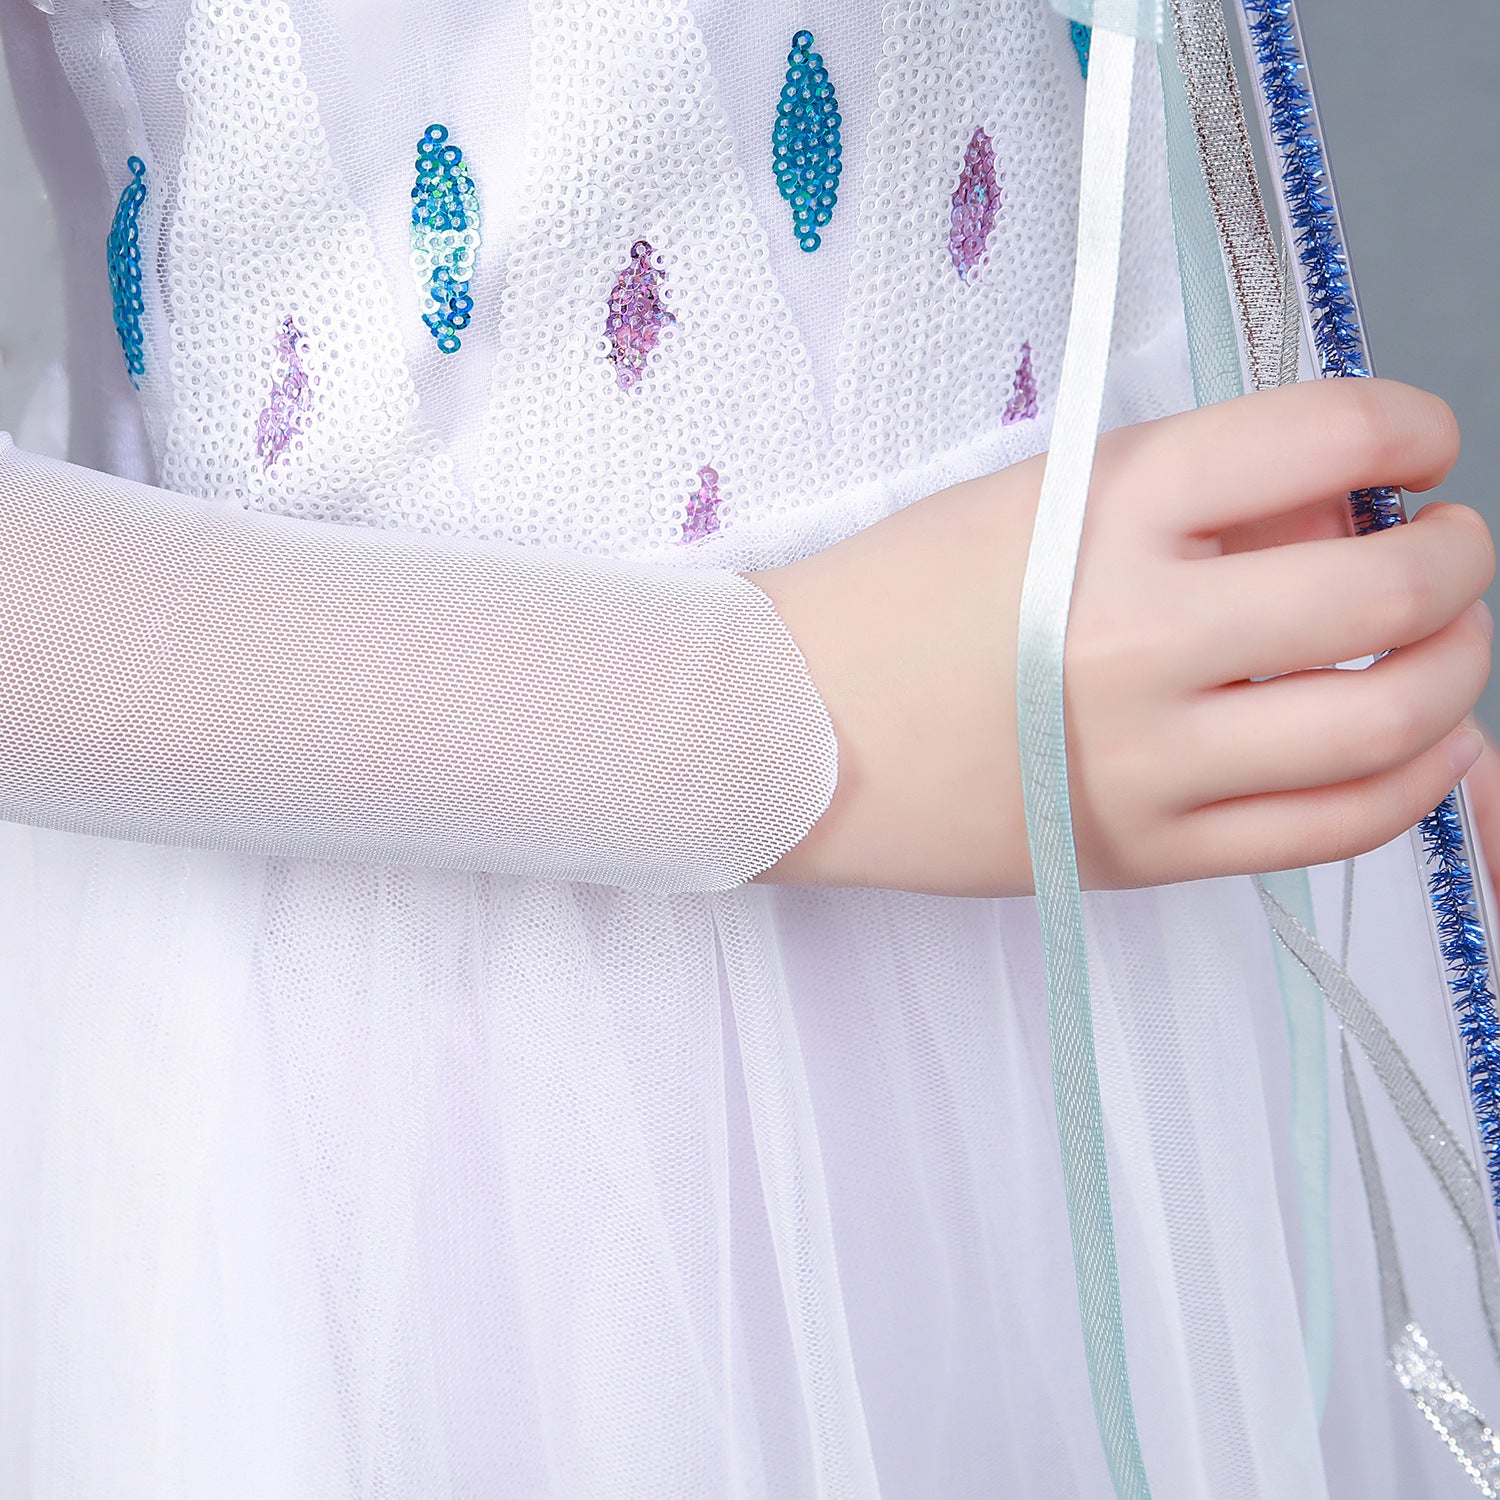 La Reine Des Neiges Frozen 2 Elsa Robe Blanche Pour Enfant Cosplay Costume